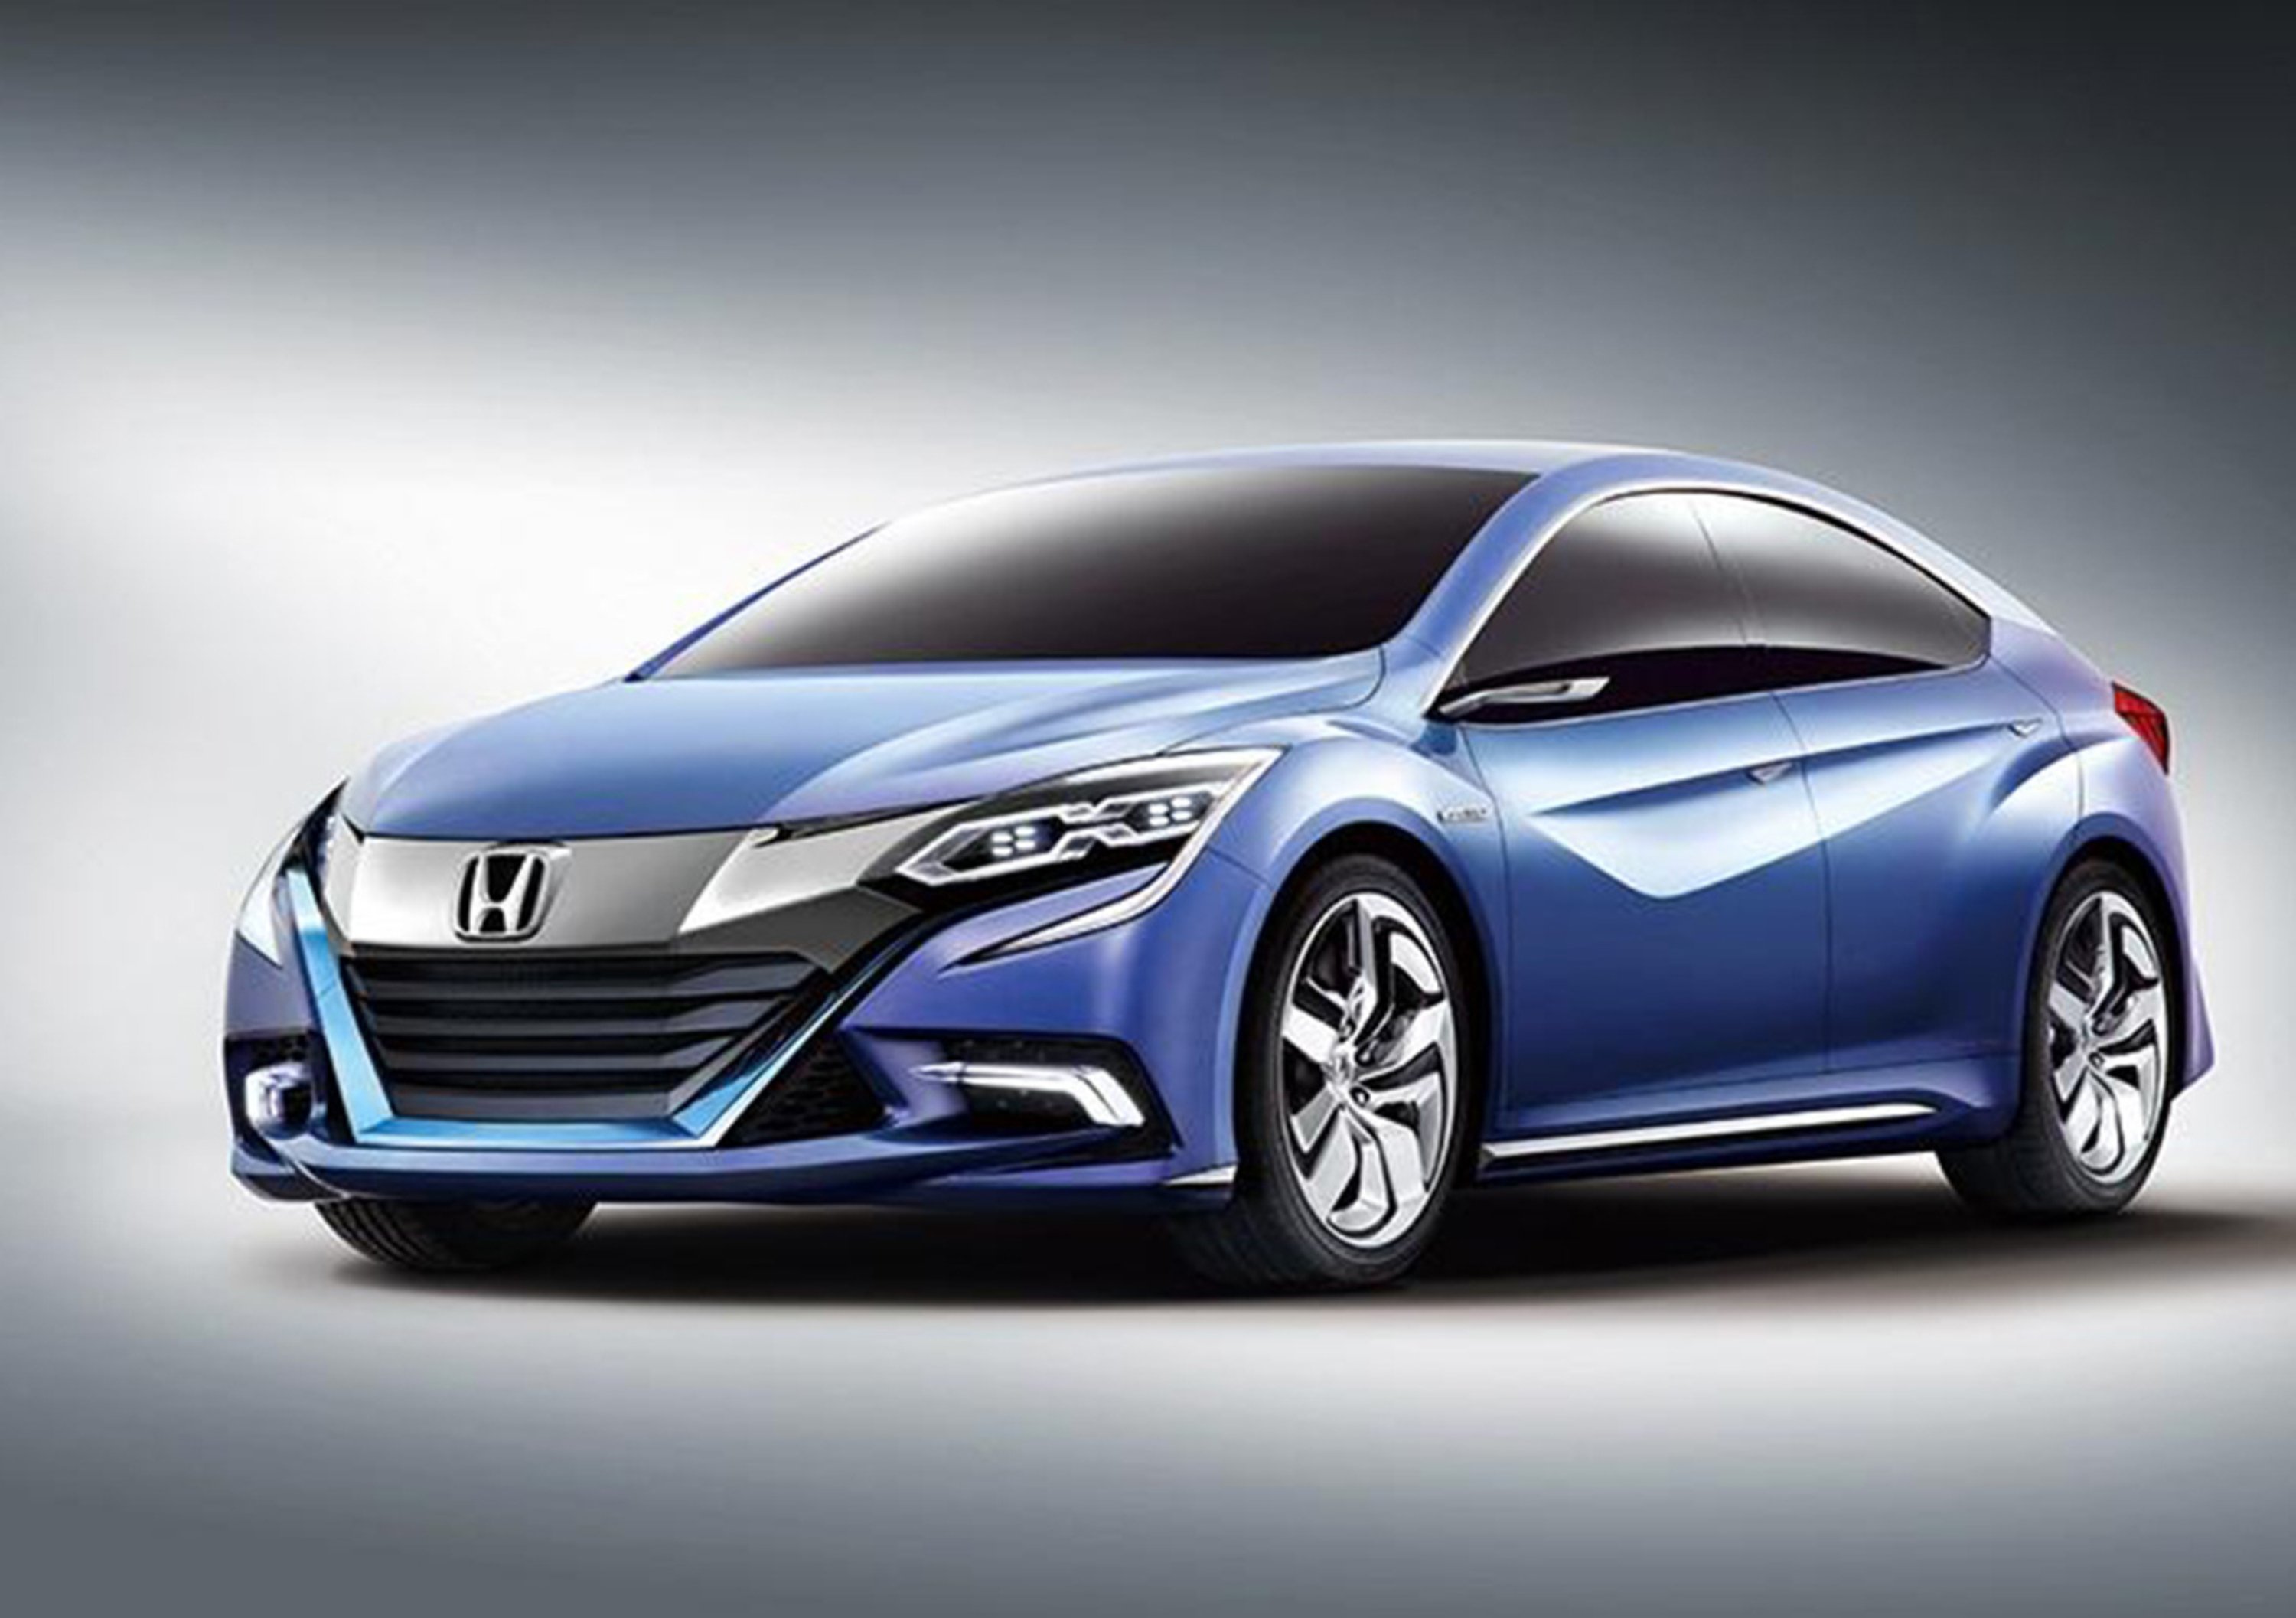 Honda Concept B concept